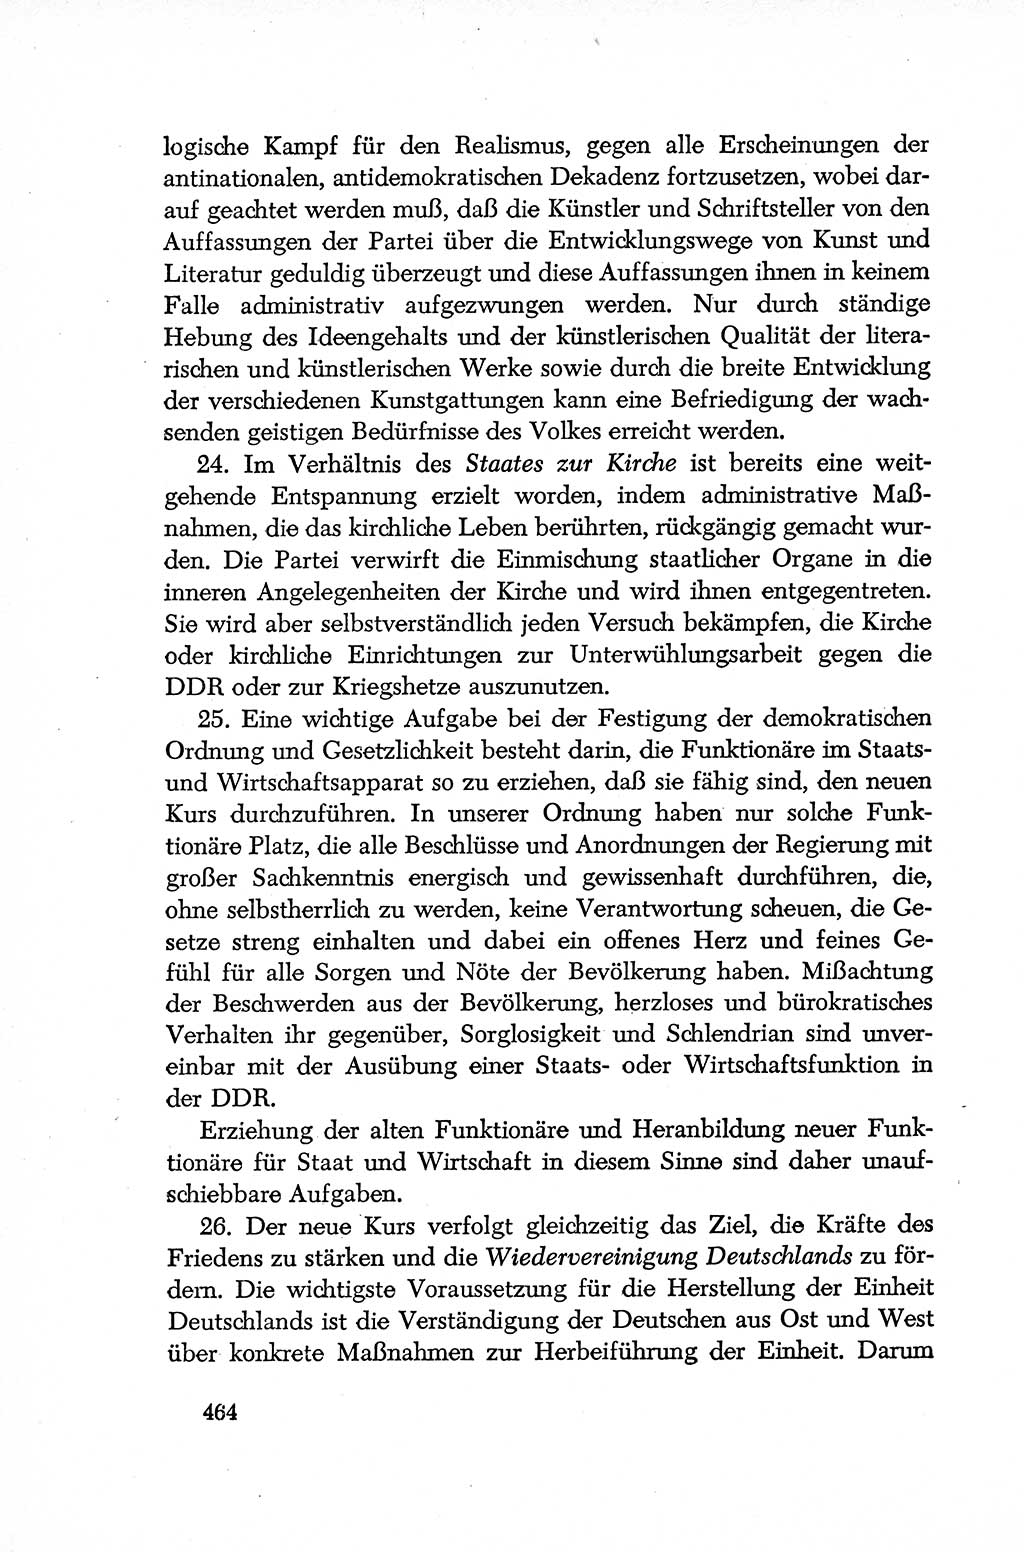 Dokumente der Sozialistischen Einheitspartei Deutschlands (SED) [Deutsche Demokratische Republik (DDR)] 1952-1953, Seite 464 (Dok. SED DDR 1952-1953, S. 464)